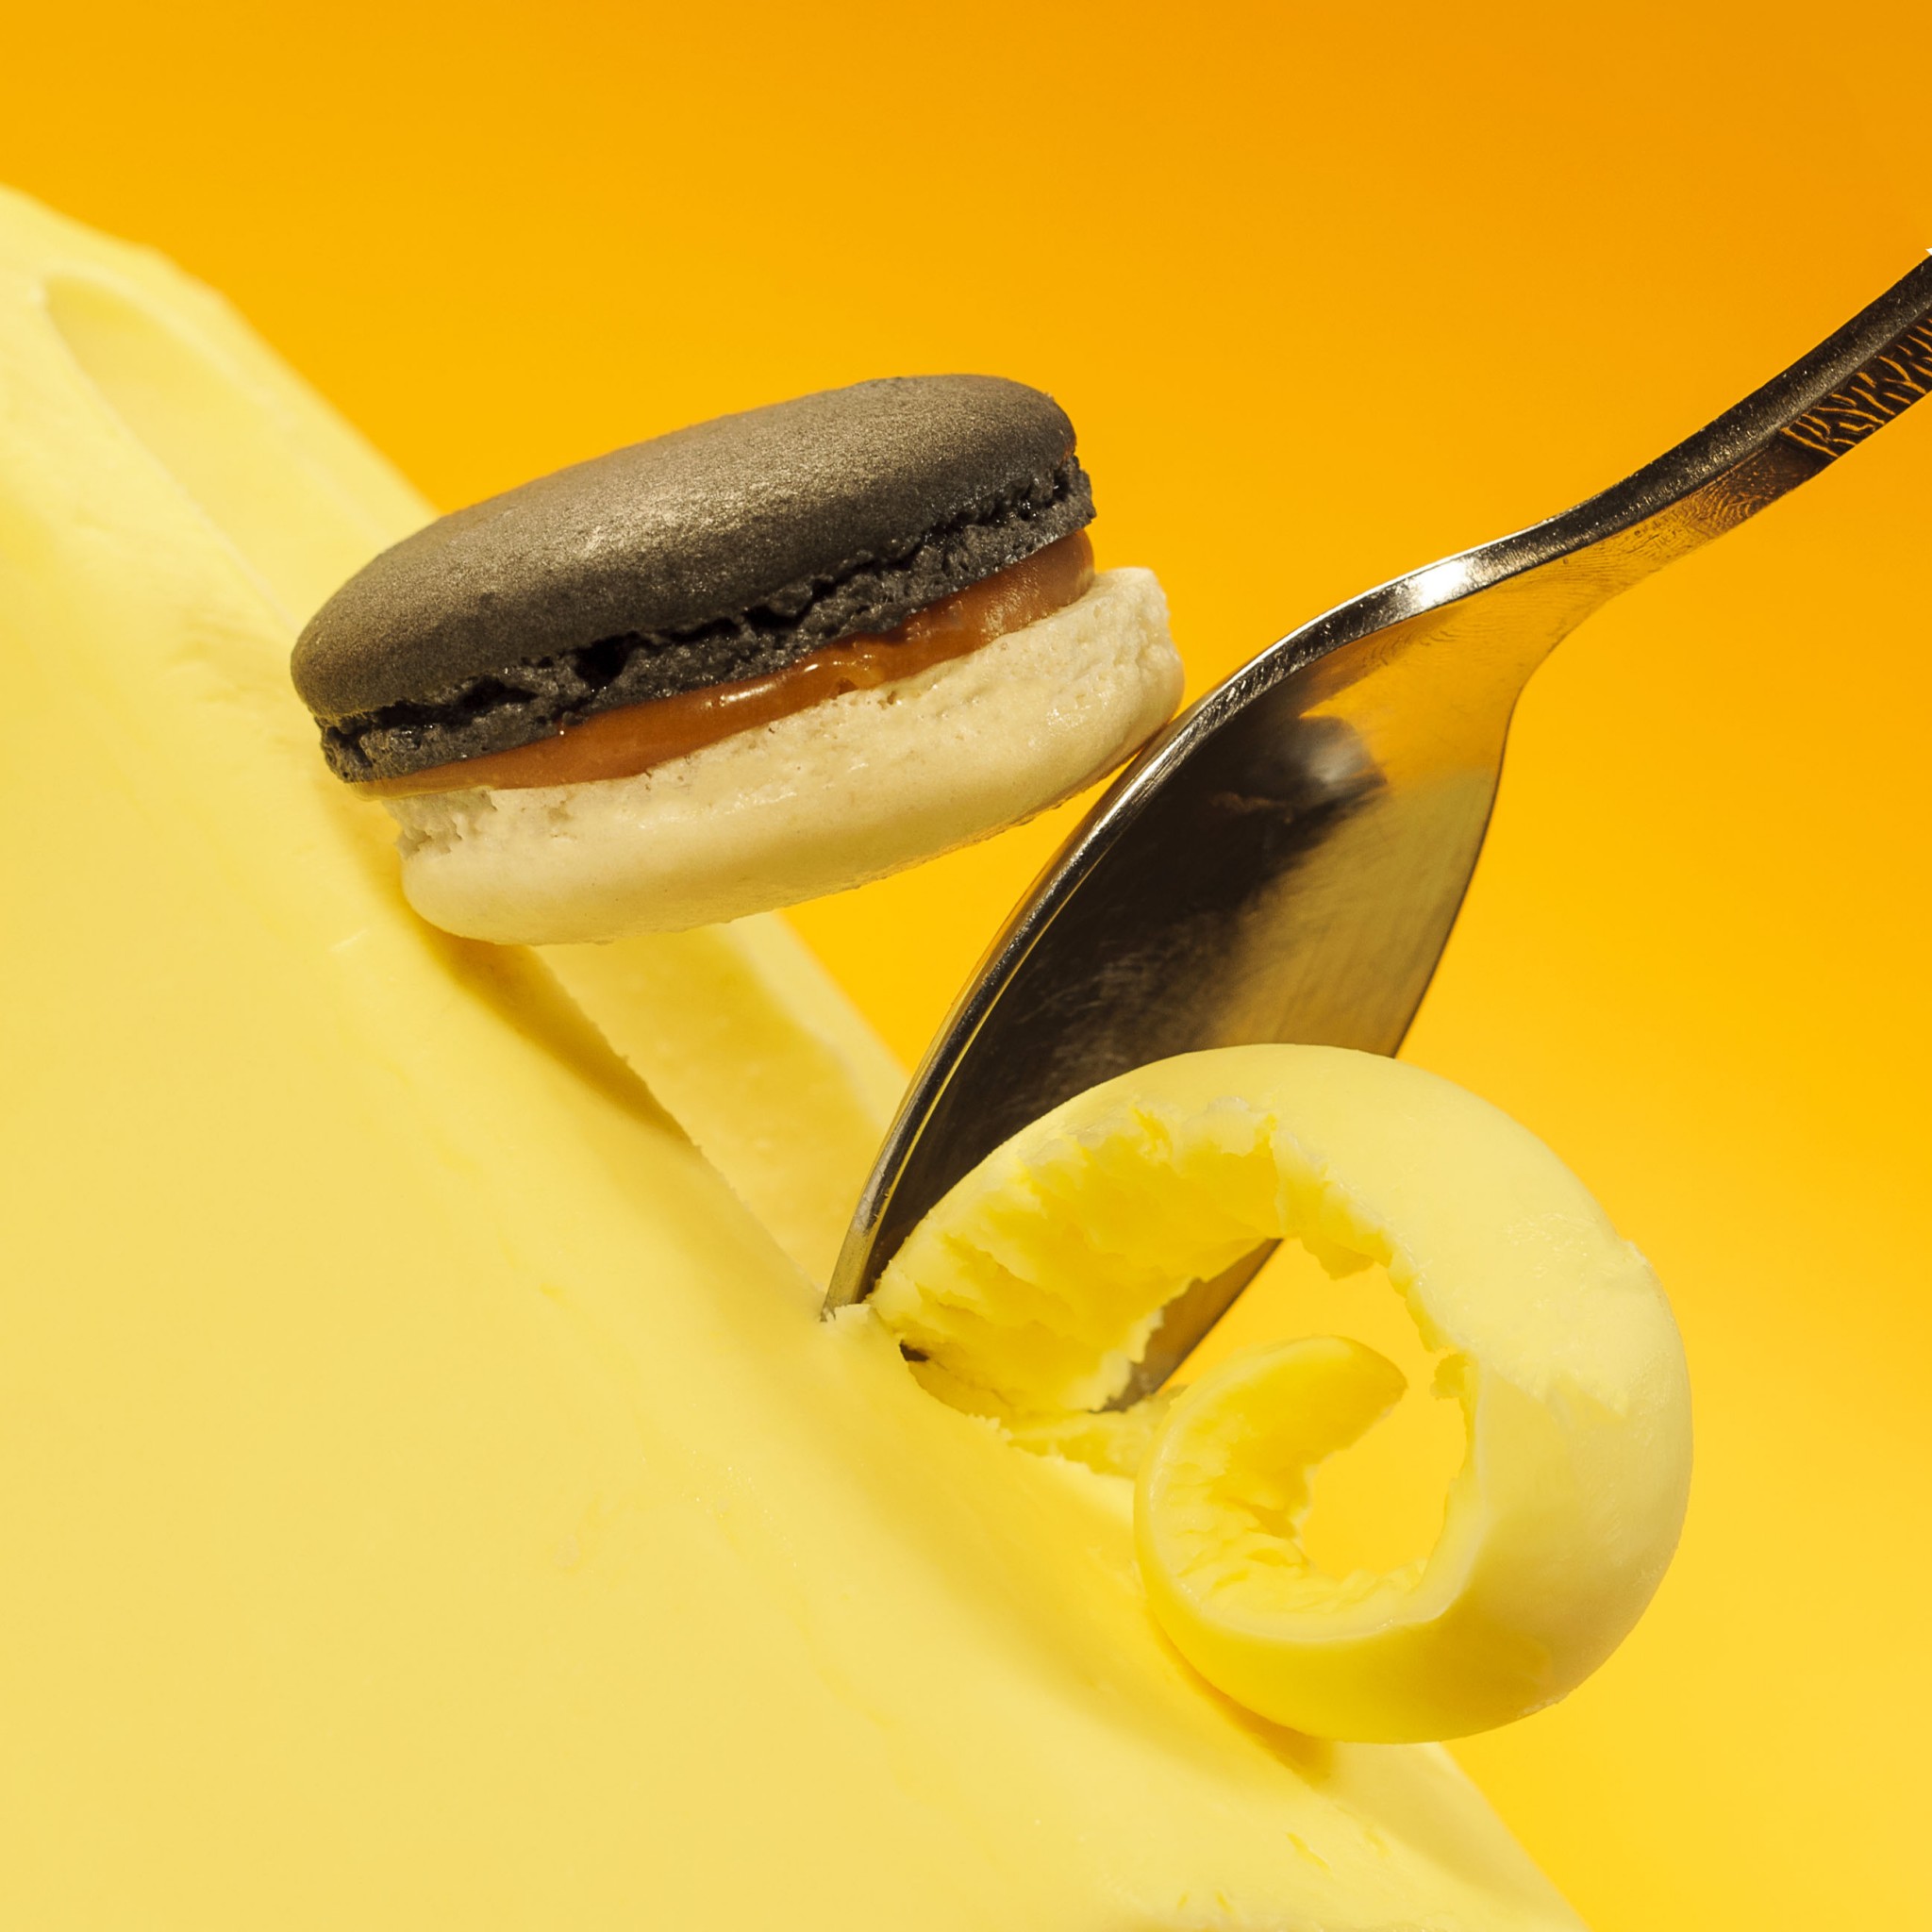 prise de vue culinaire, macaron d'Alain Chartier sur du beurre